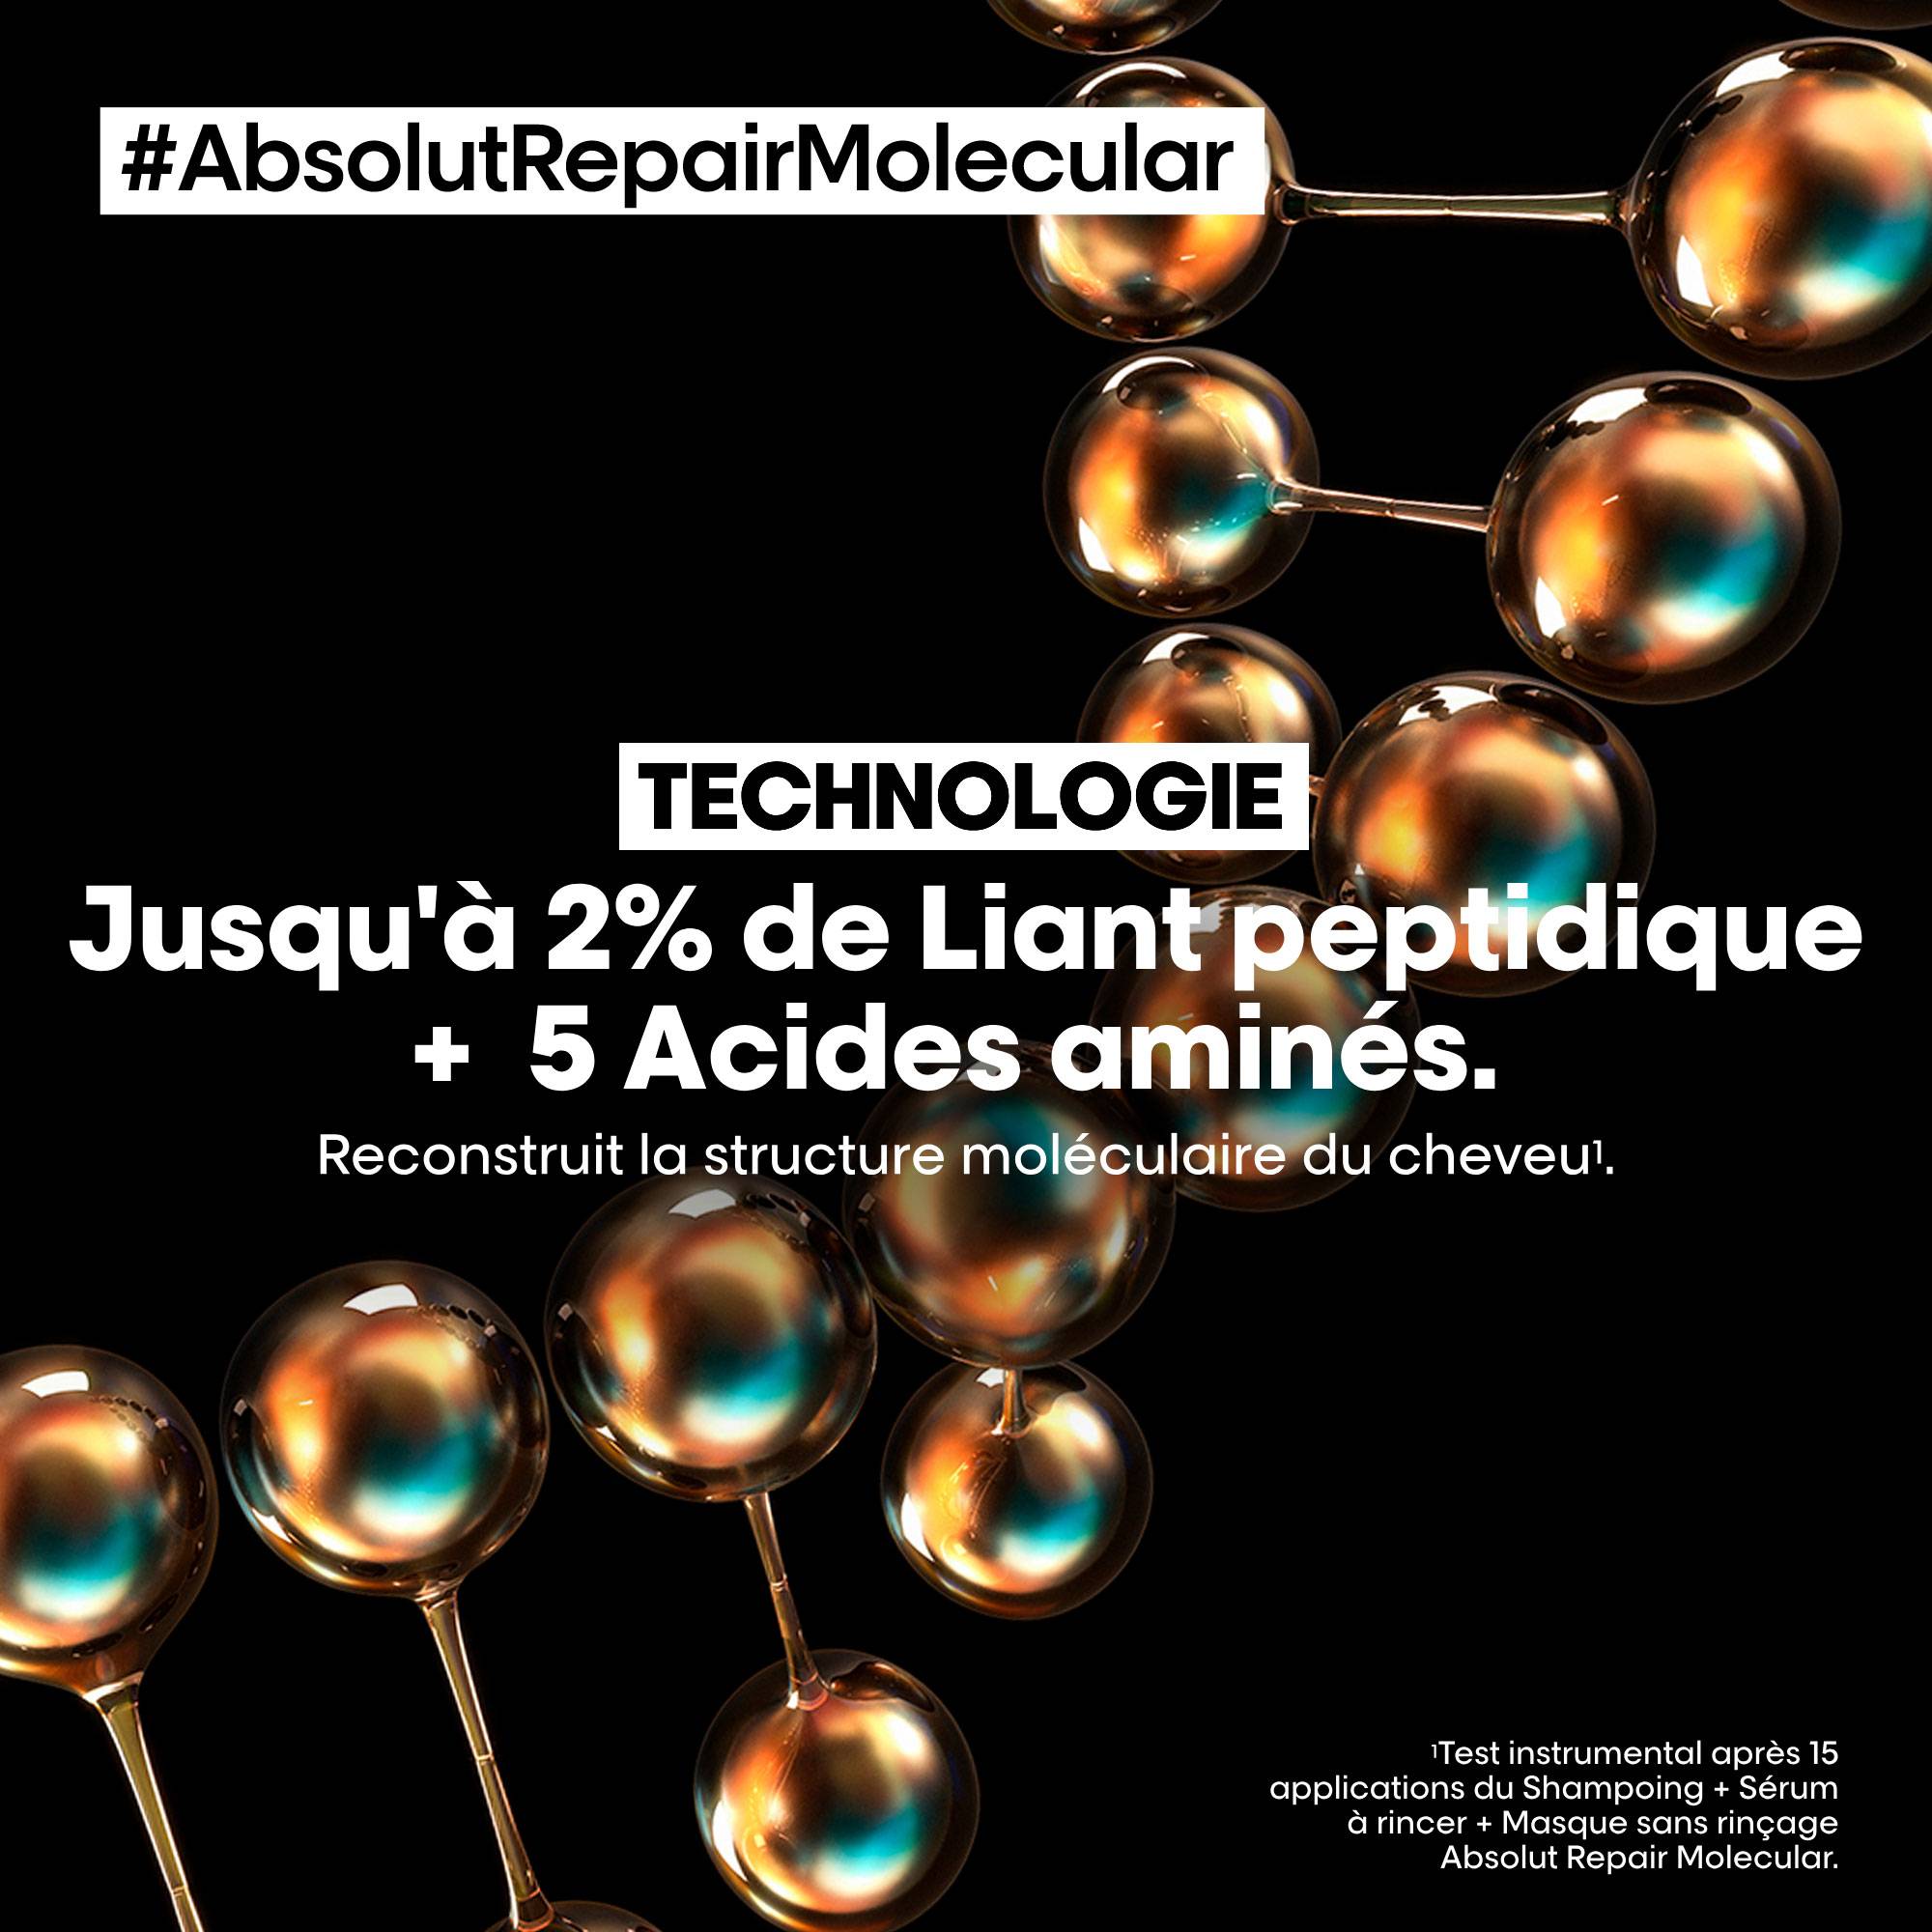 Shampoing réparateur moléculaire Absolut Repair Molecular de la marque L'Oréal Professionnel Contenance 300ml - 4